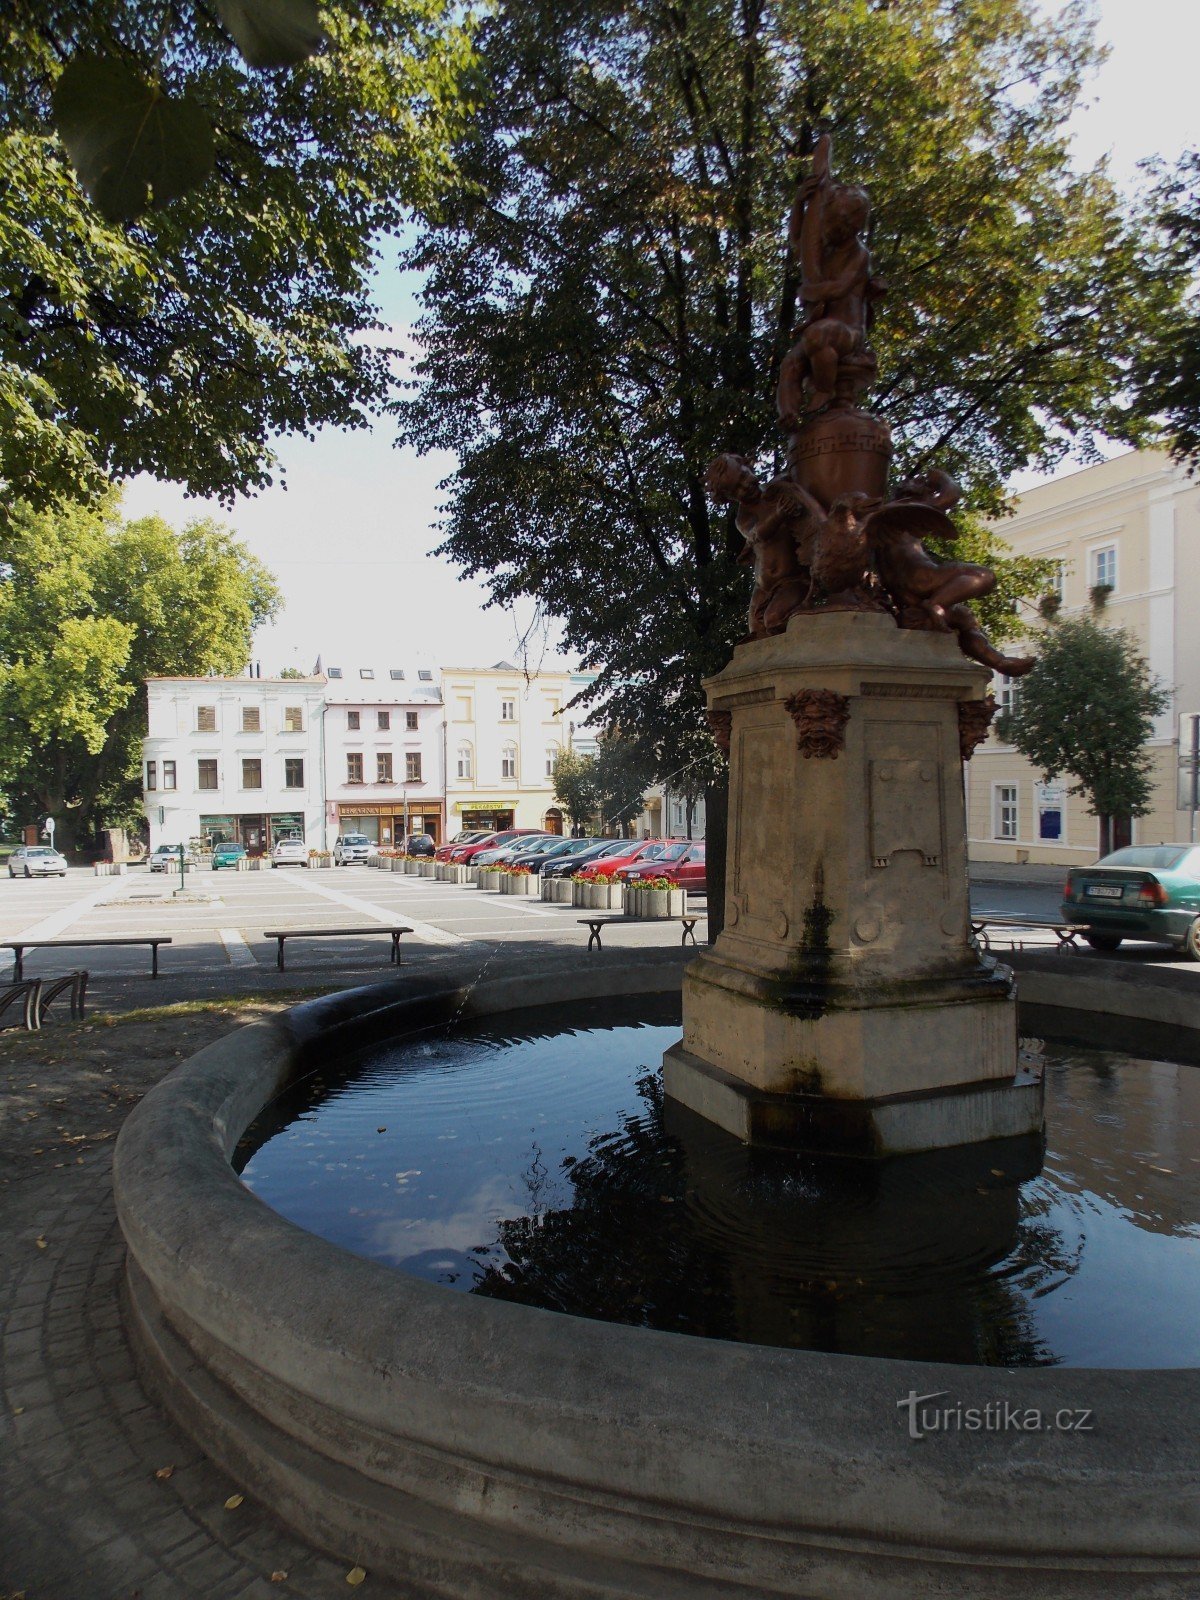 De fontein - het dominante kenmerk van het Masaryk-plein in Odary